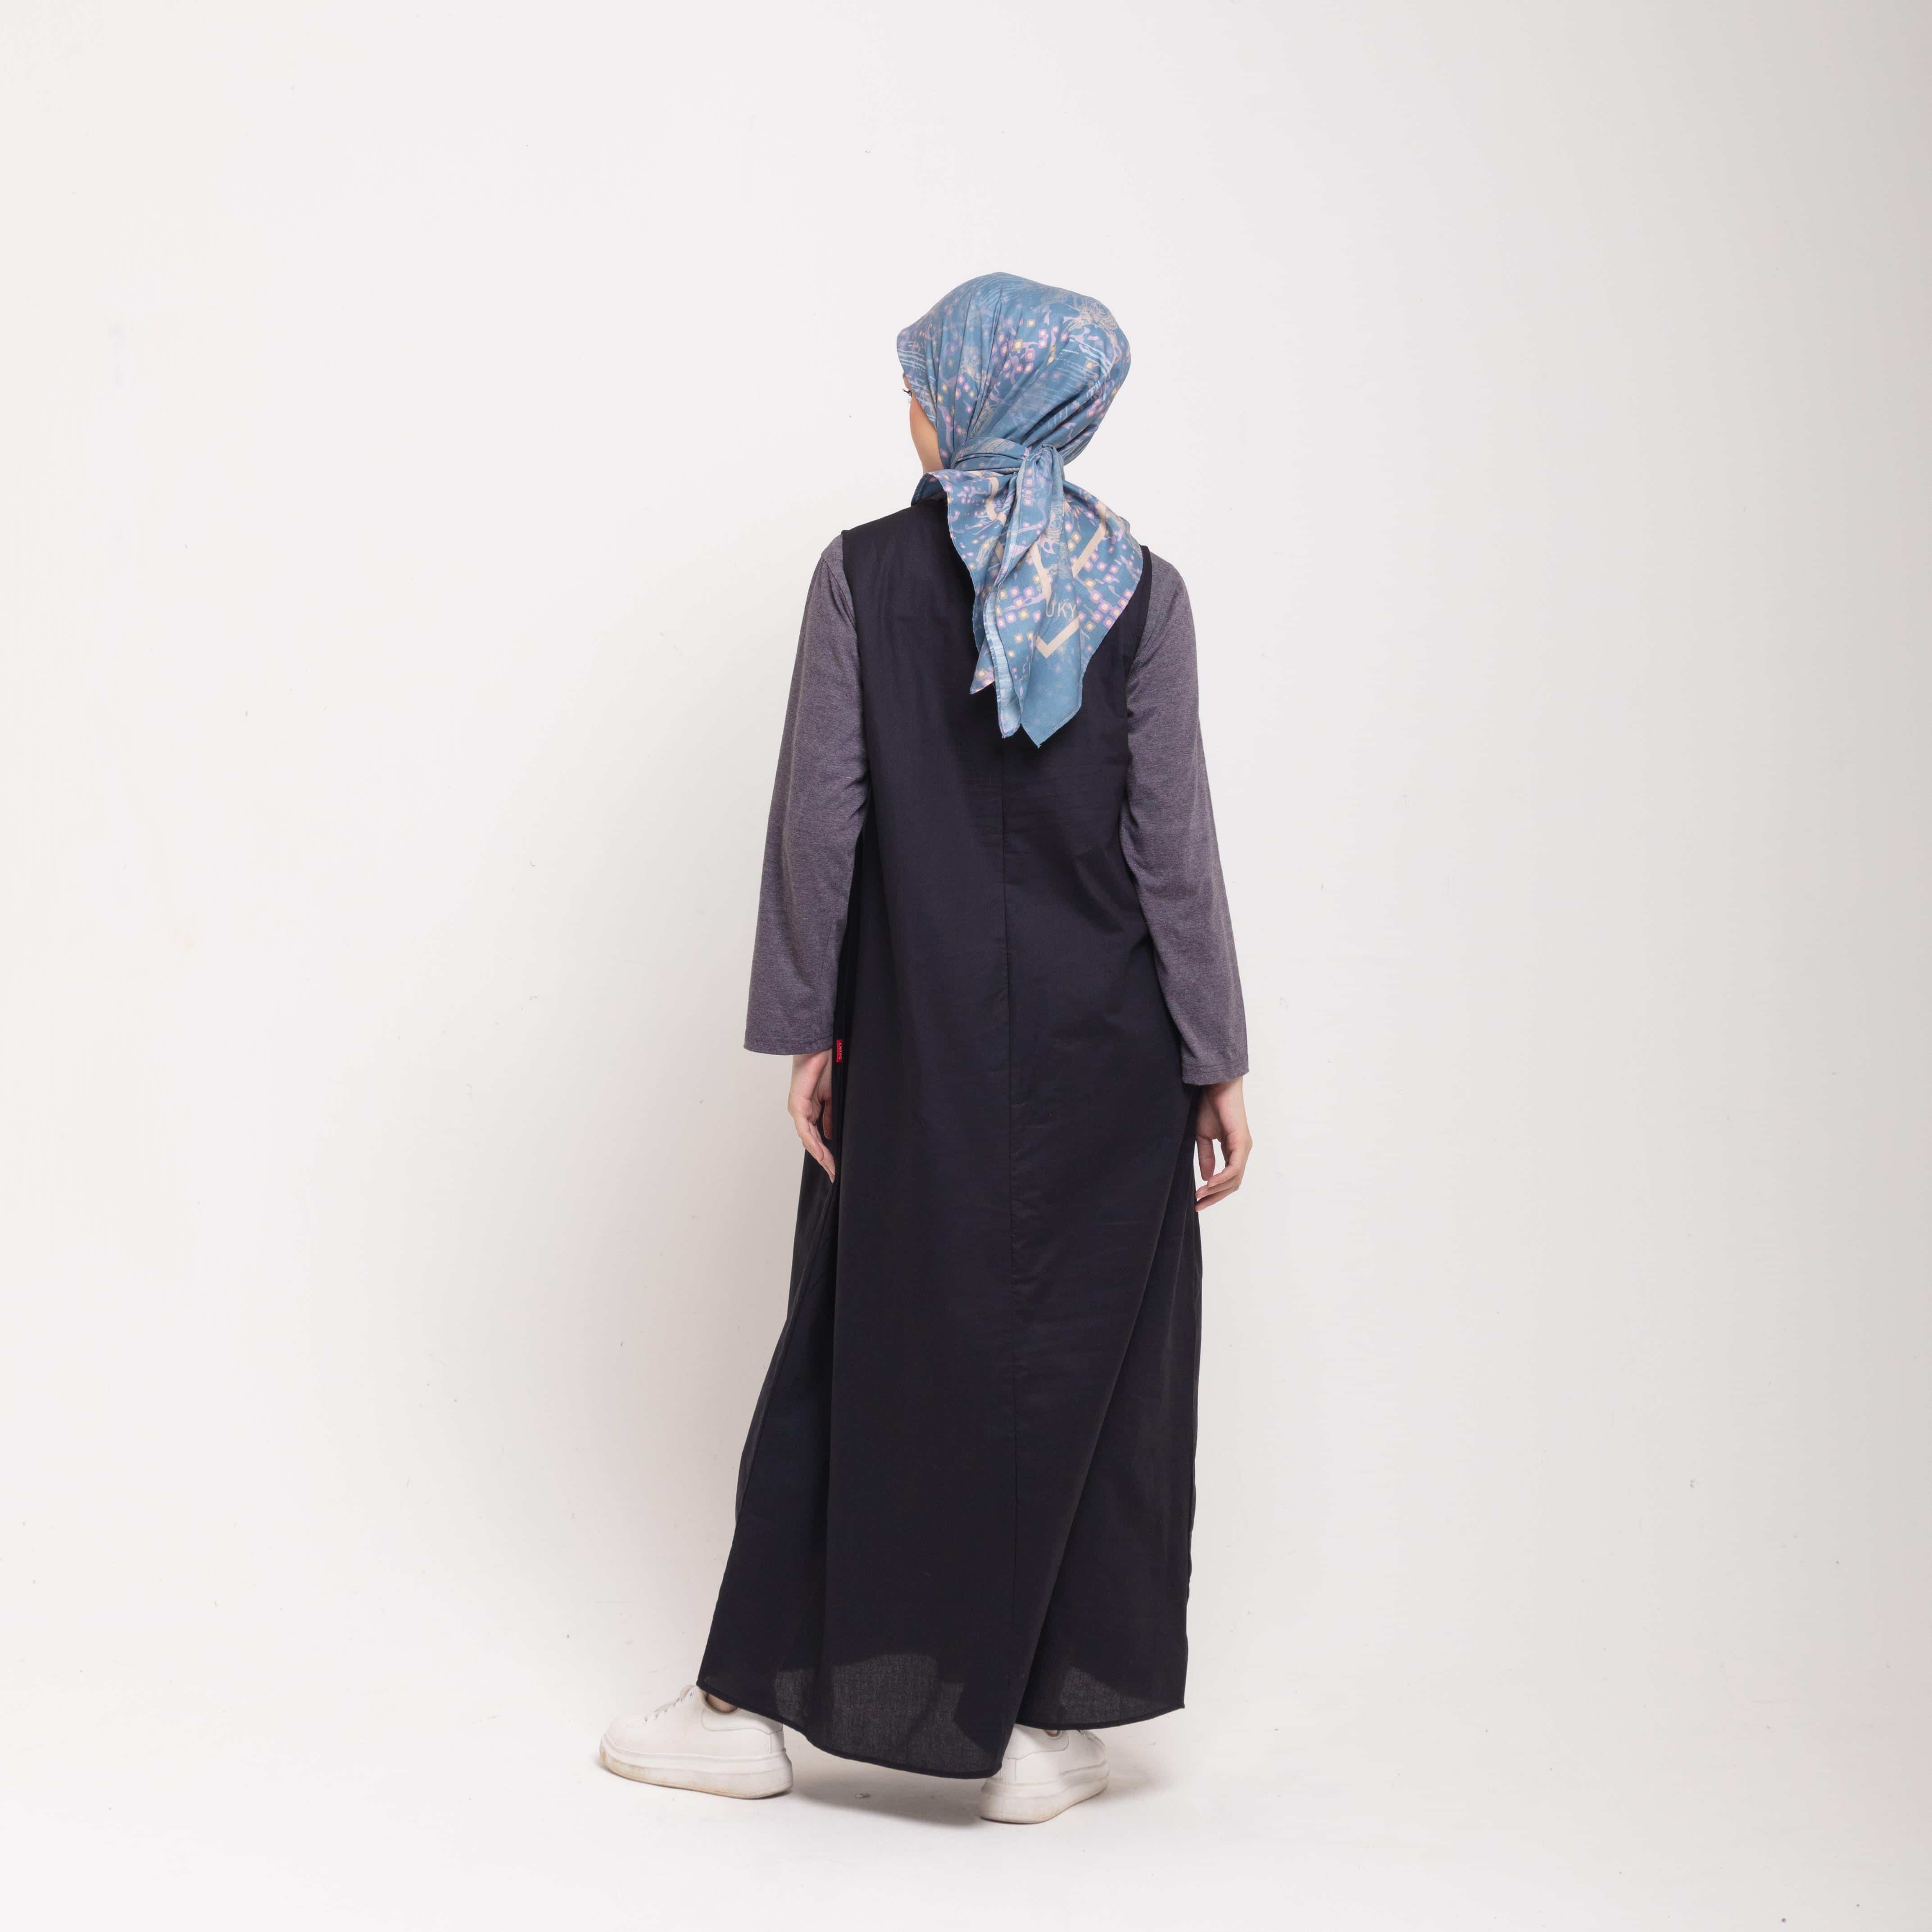 Dress Wanita Muslim Dauky Inner Dress Sleeveless Ruffles - Hitam